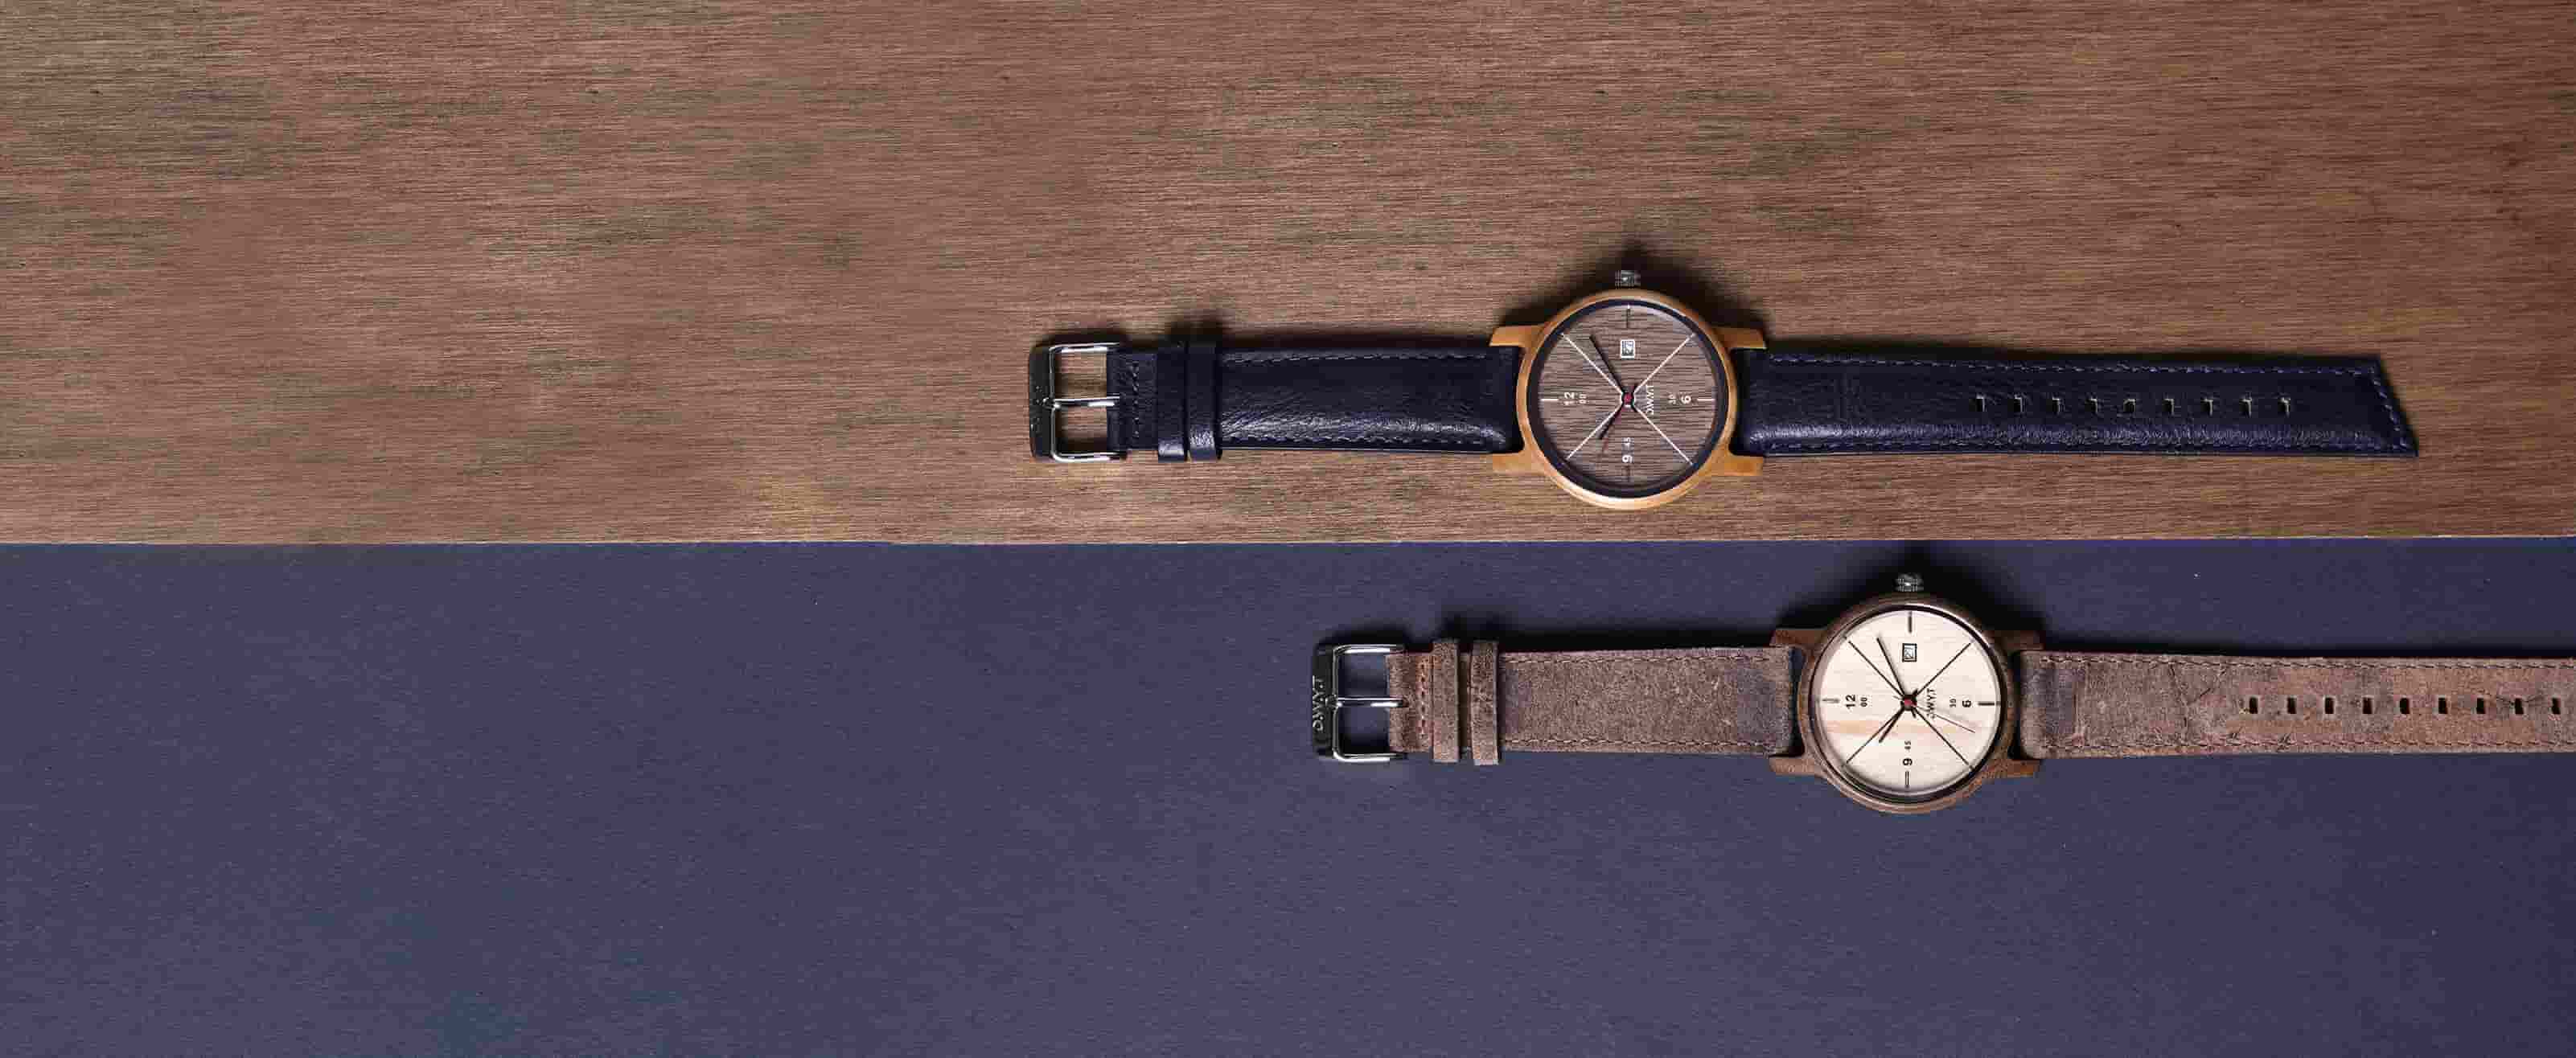 DIY : changez votre bracelet de montre et customisez votre look ! - D.W.Y.T